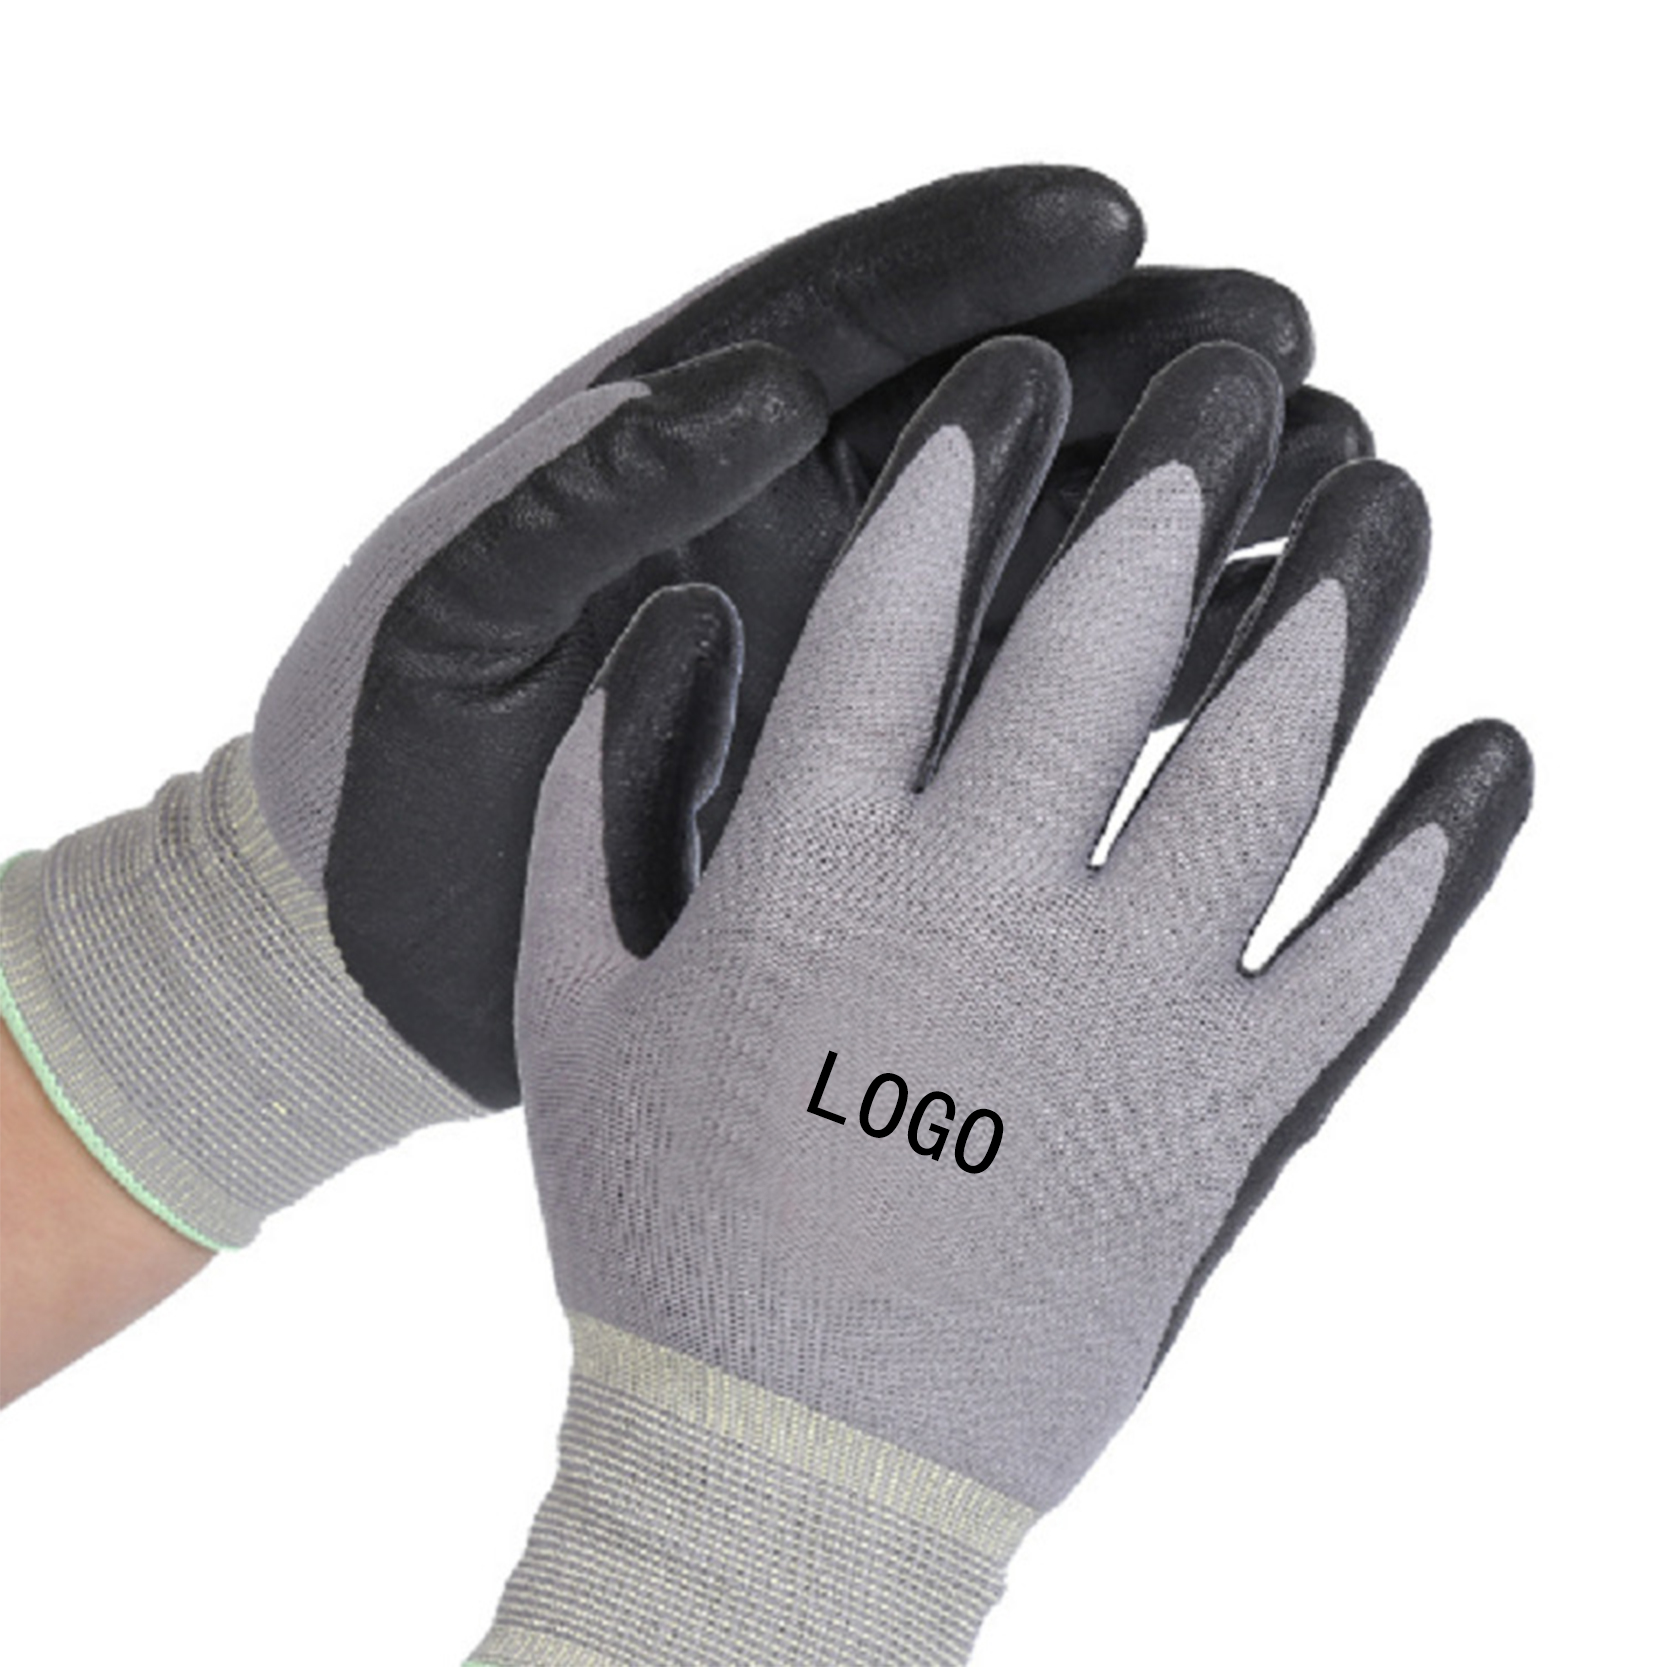 Guantes De Nitrilo Luvas Hppe Fiber Knit Cut Resistant Work Safety Black Nitrile Coated Gloves